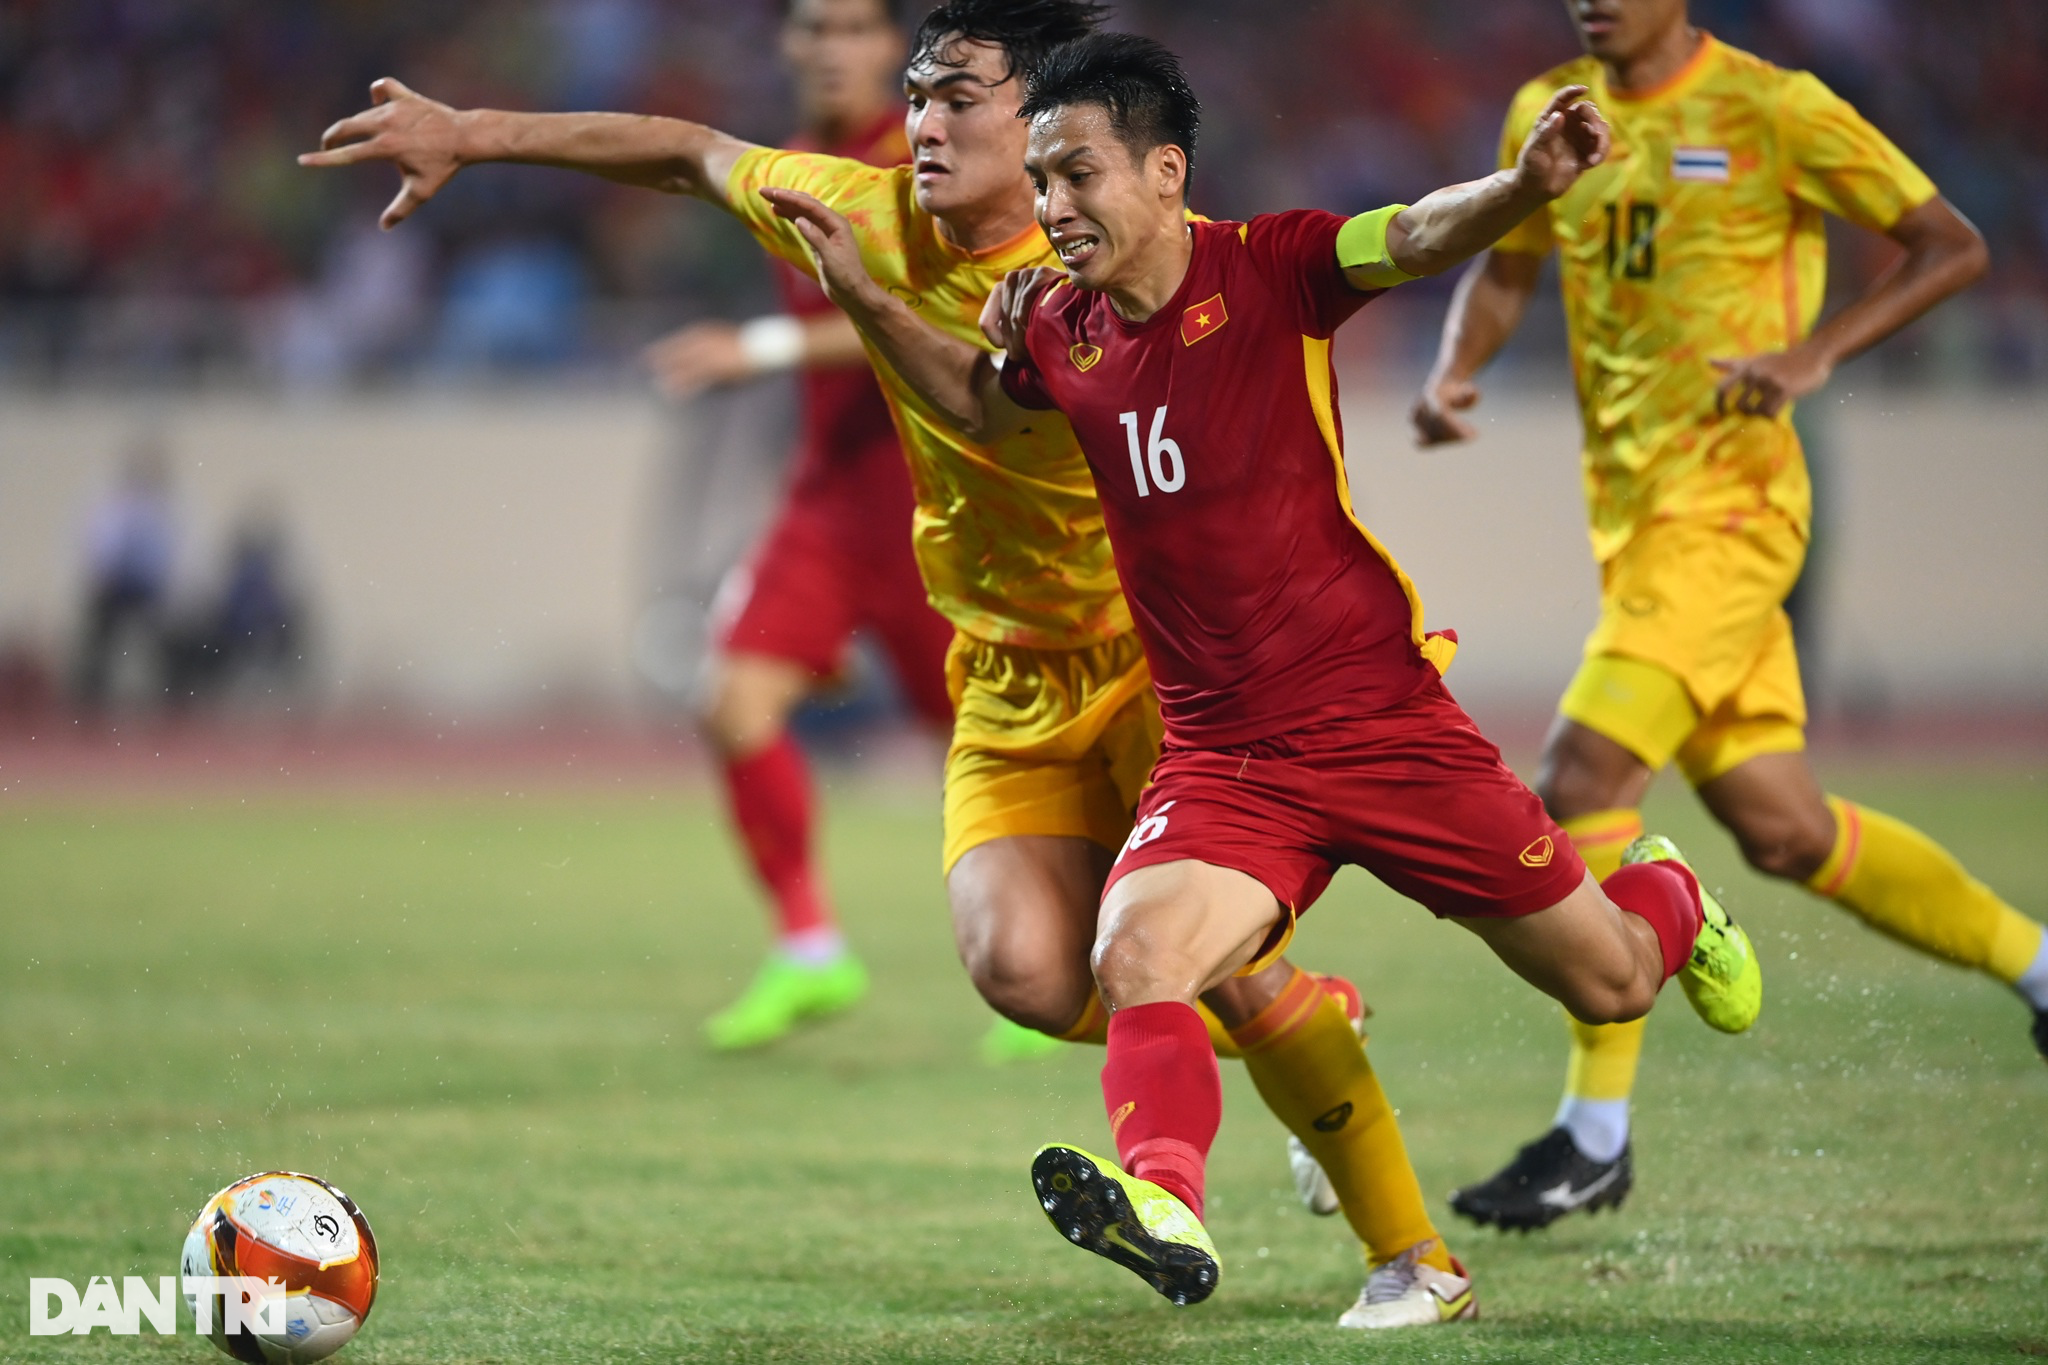 Hãy nhìn vào hình ảnh đội tuyển U23 Việt Nam đầy thể lực và sức mạnh. Họ là niềm tự hào của đất nước và đã gây ấn tượng mạnh mẽ tại giải vô địch U23 Đông Nam Á.